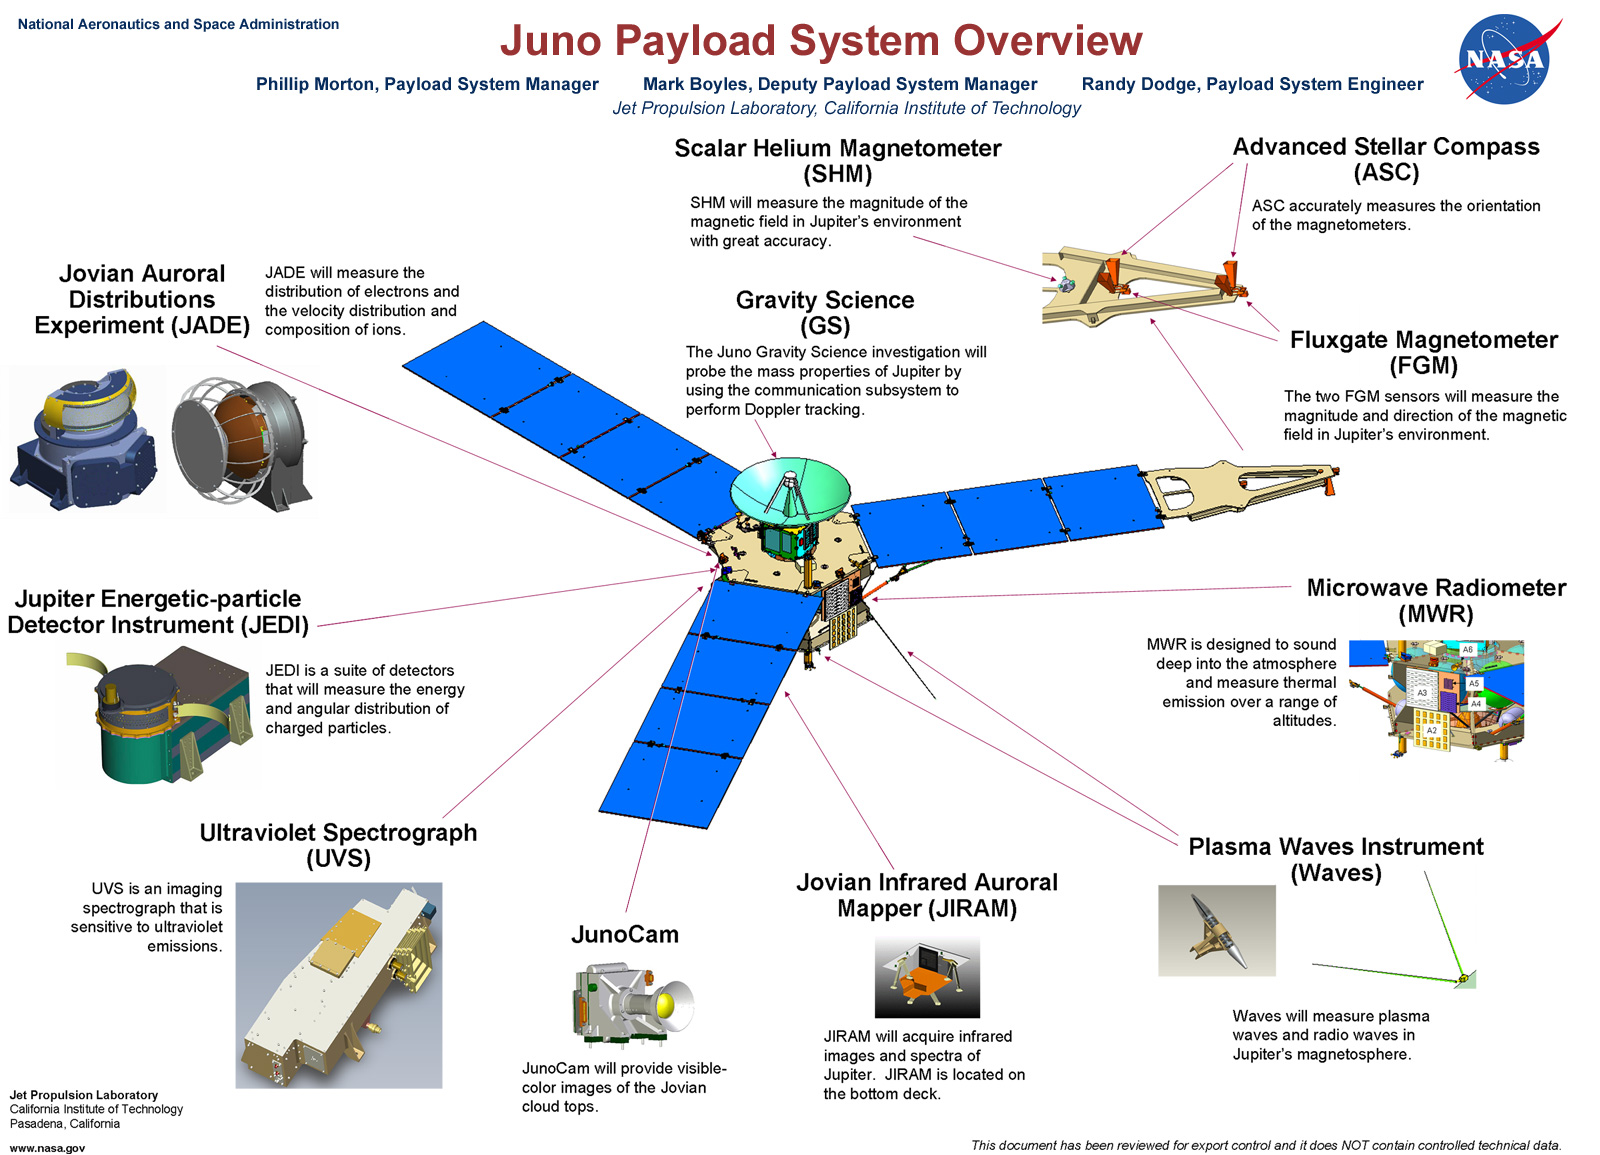 Juno's payload. Image Credit: NASA